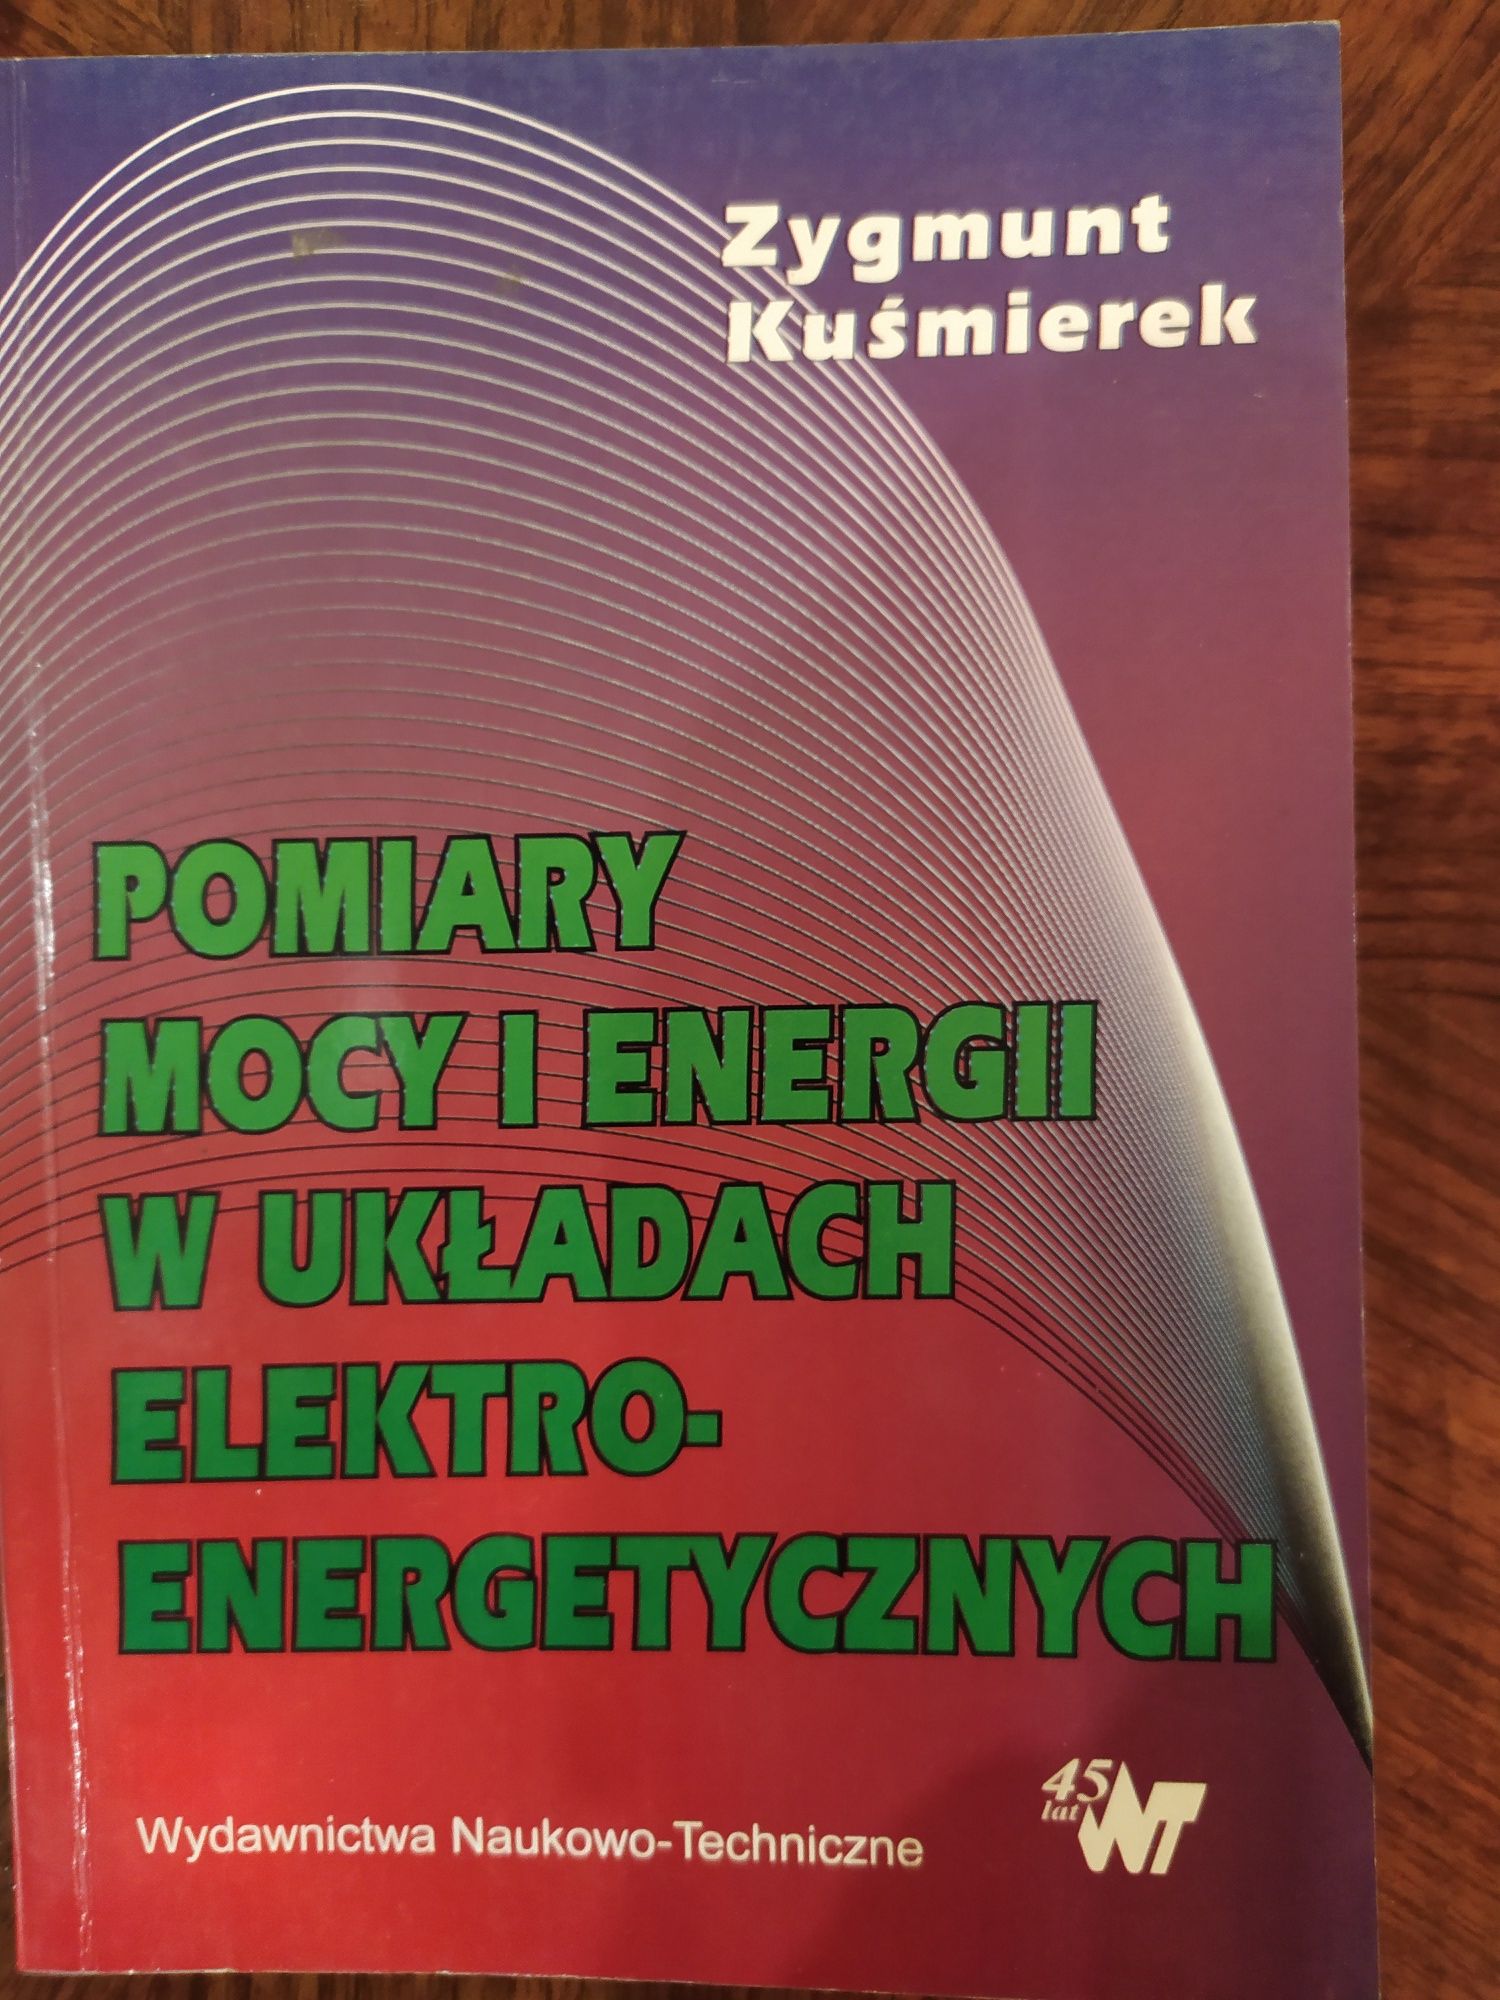 Pomiary Mocy i energii w układach elektro-energetycznych - Kuśmierek